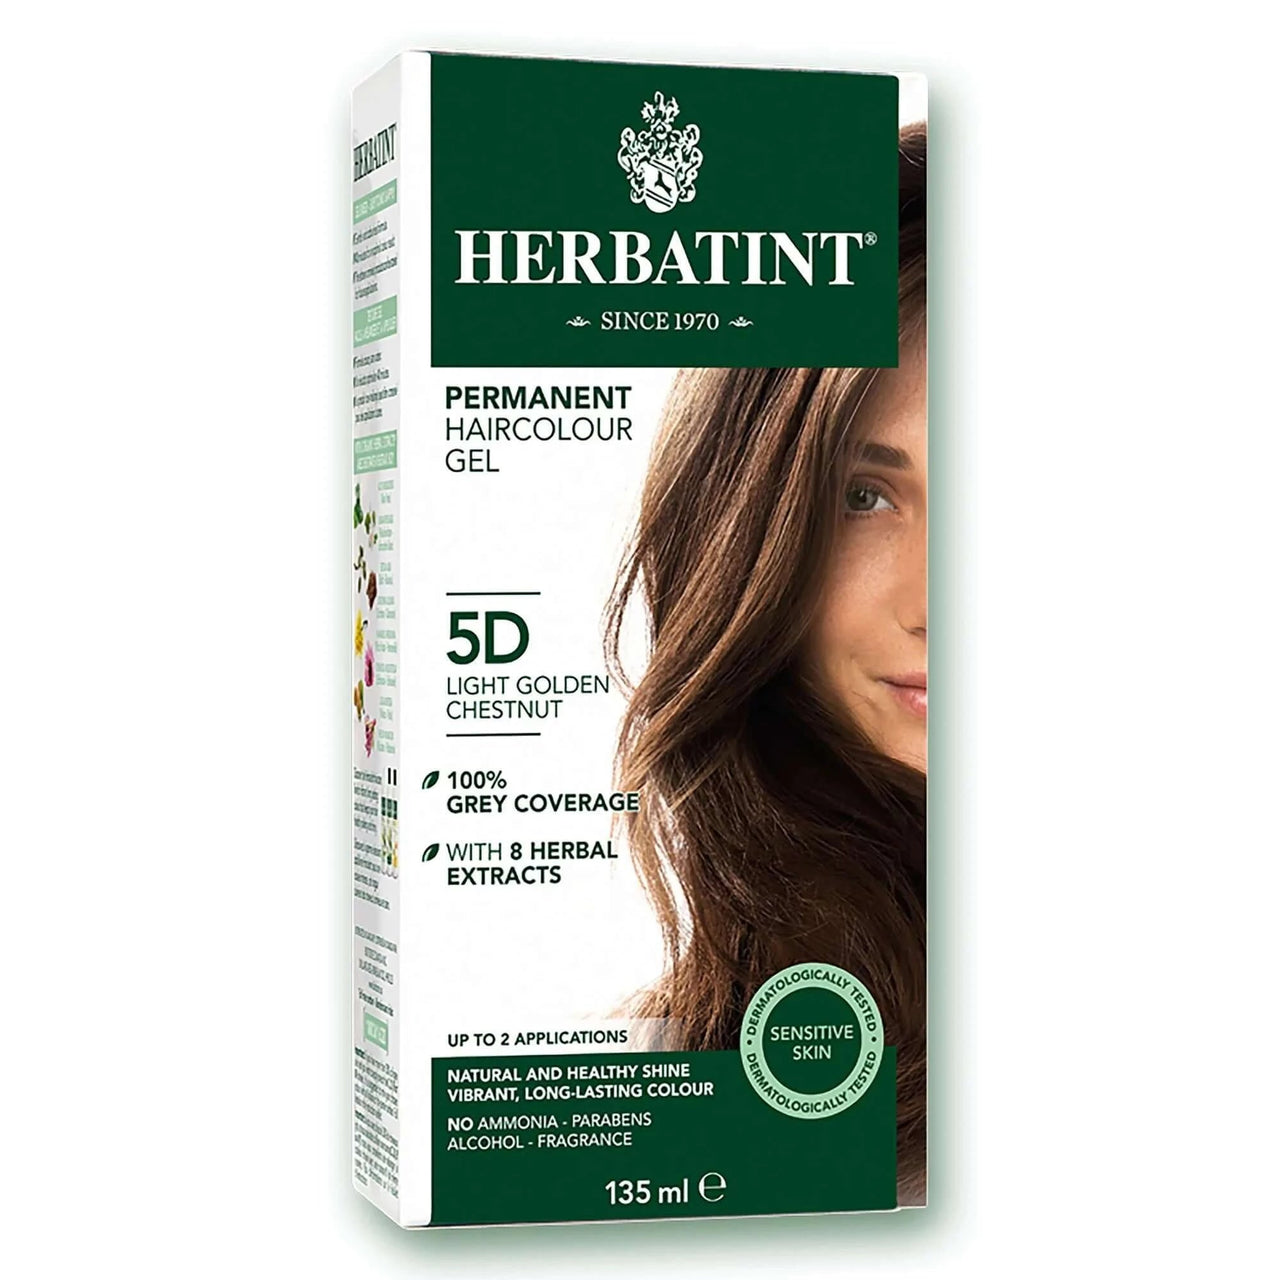 Herbatint 5D Light Golden Chestnut Permanent Haircolour Gel 135mL - Nutrition Plus